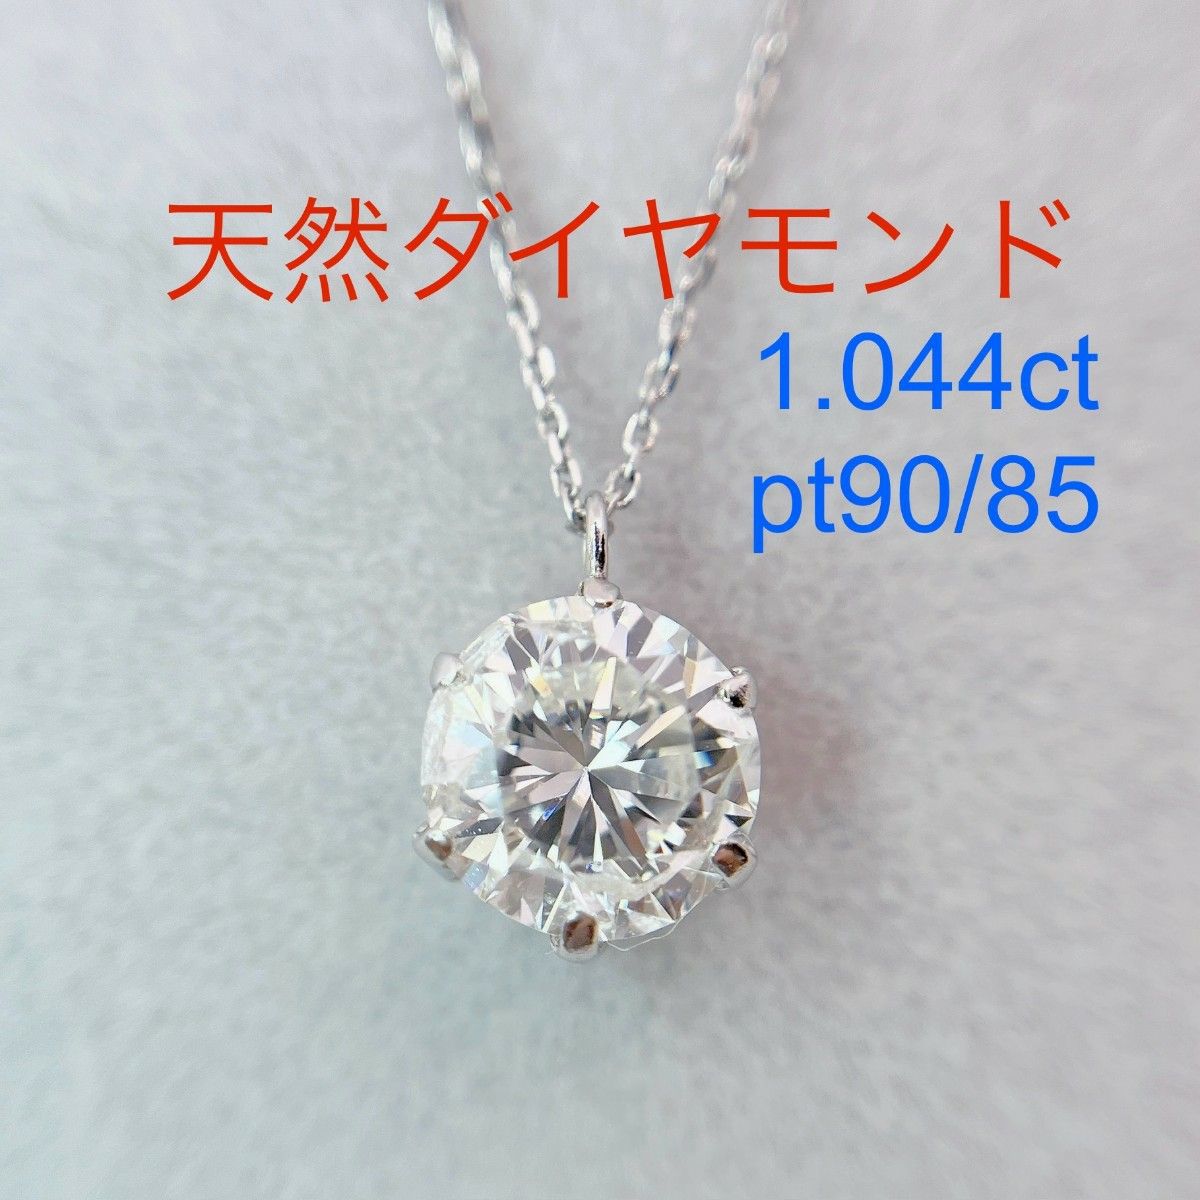 Tキラキラshop 天然ダイヤモンド 1.044ct プラチナ ネックレス